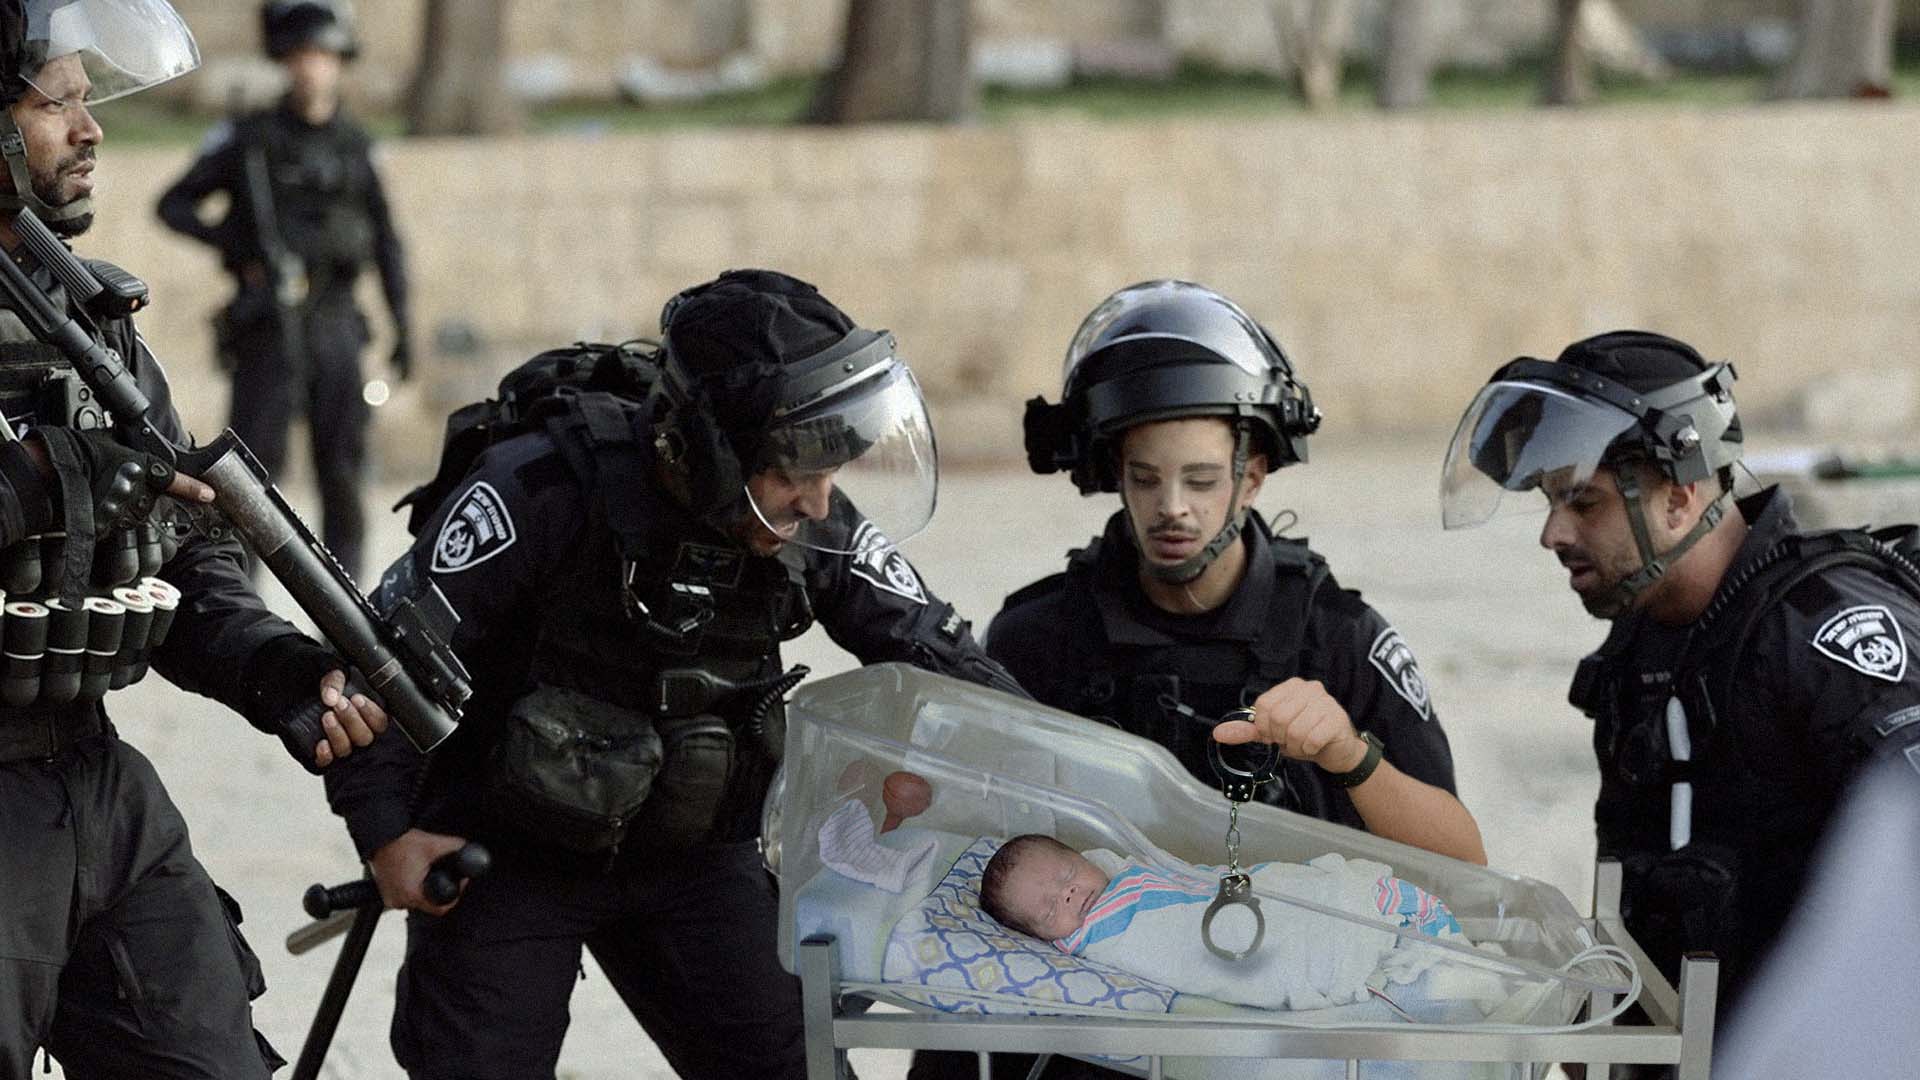 صورة تزويد دوريات الجيش الإسرائيلي بغرف ولادة لاعتقال الفلسطينيين أولاً بأول